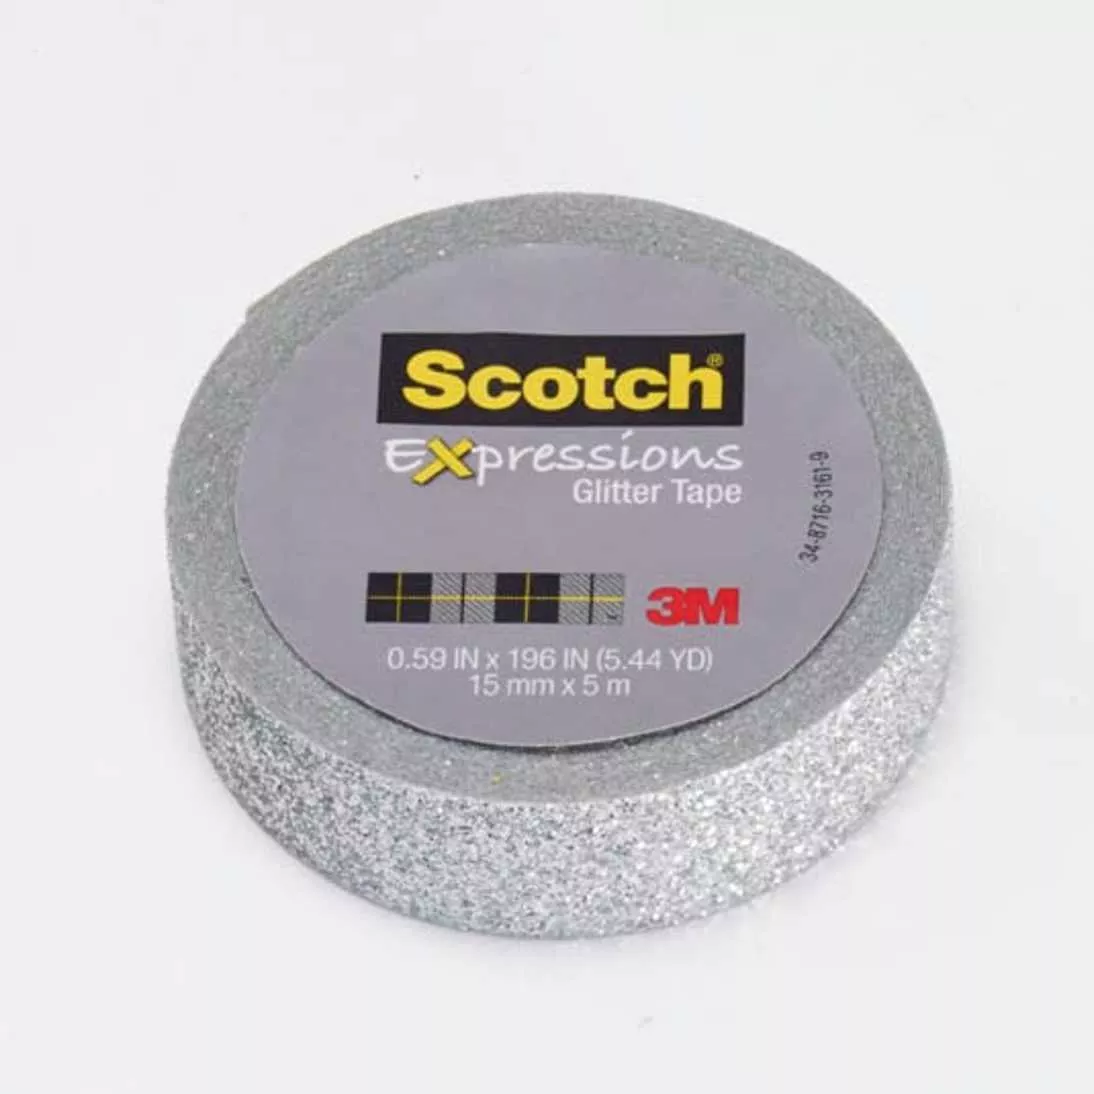 Scotch® Expressions Glitter Tape C514-SIL, .59 in x 196 in (15 mm x 5 m)
Silver Glitter